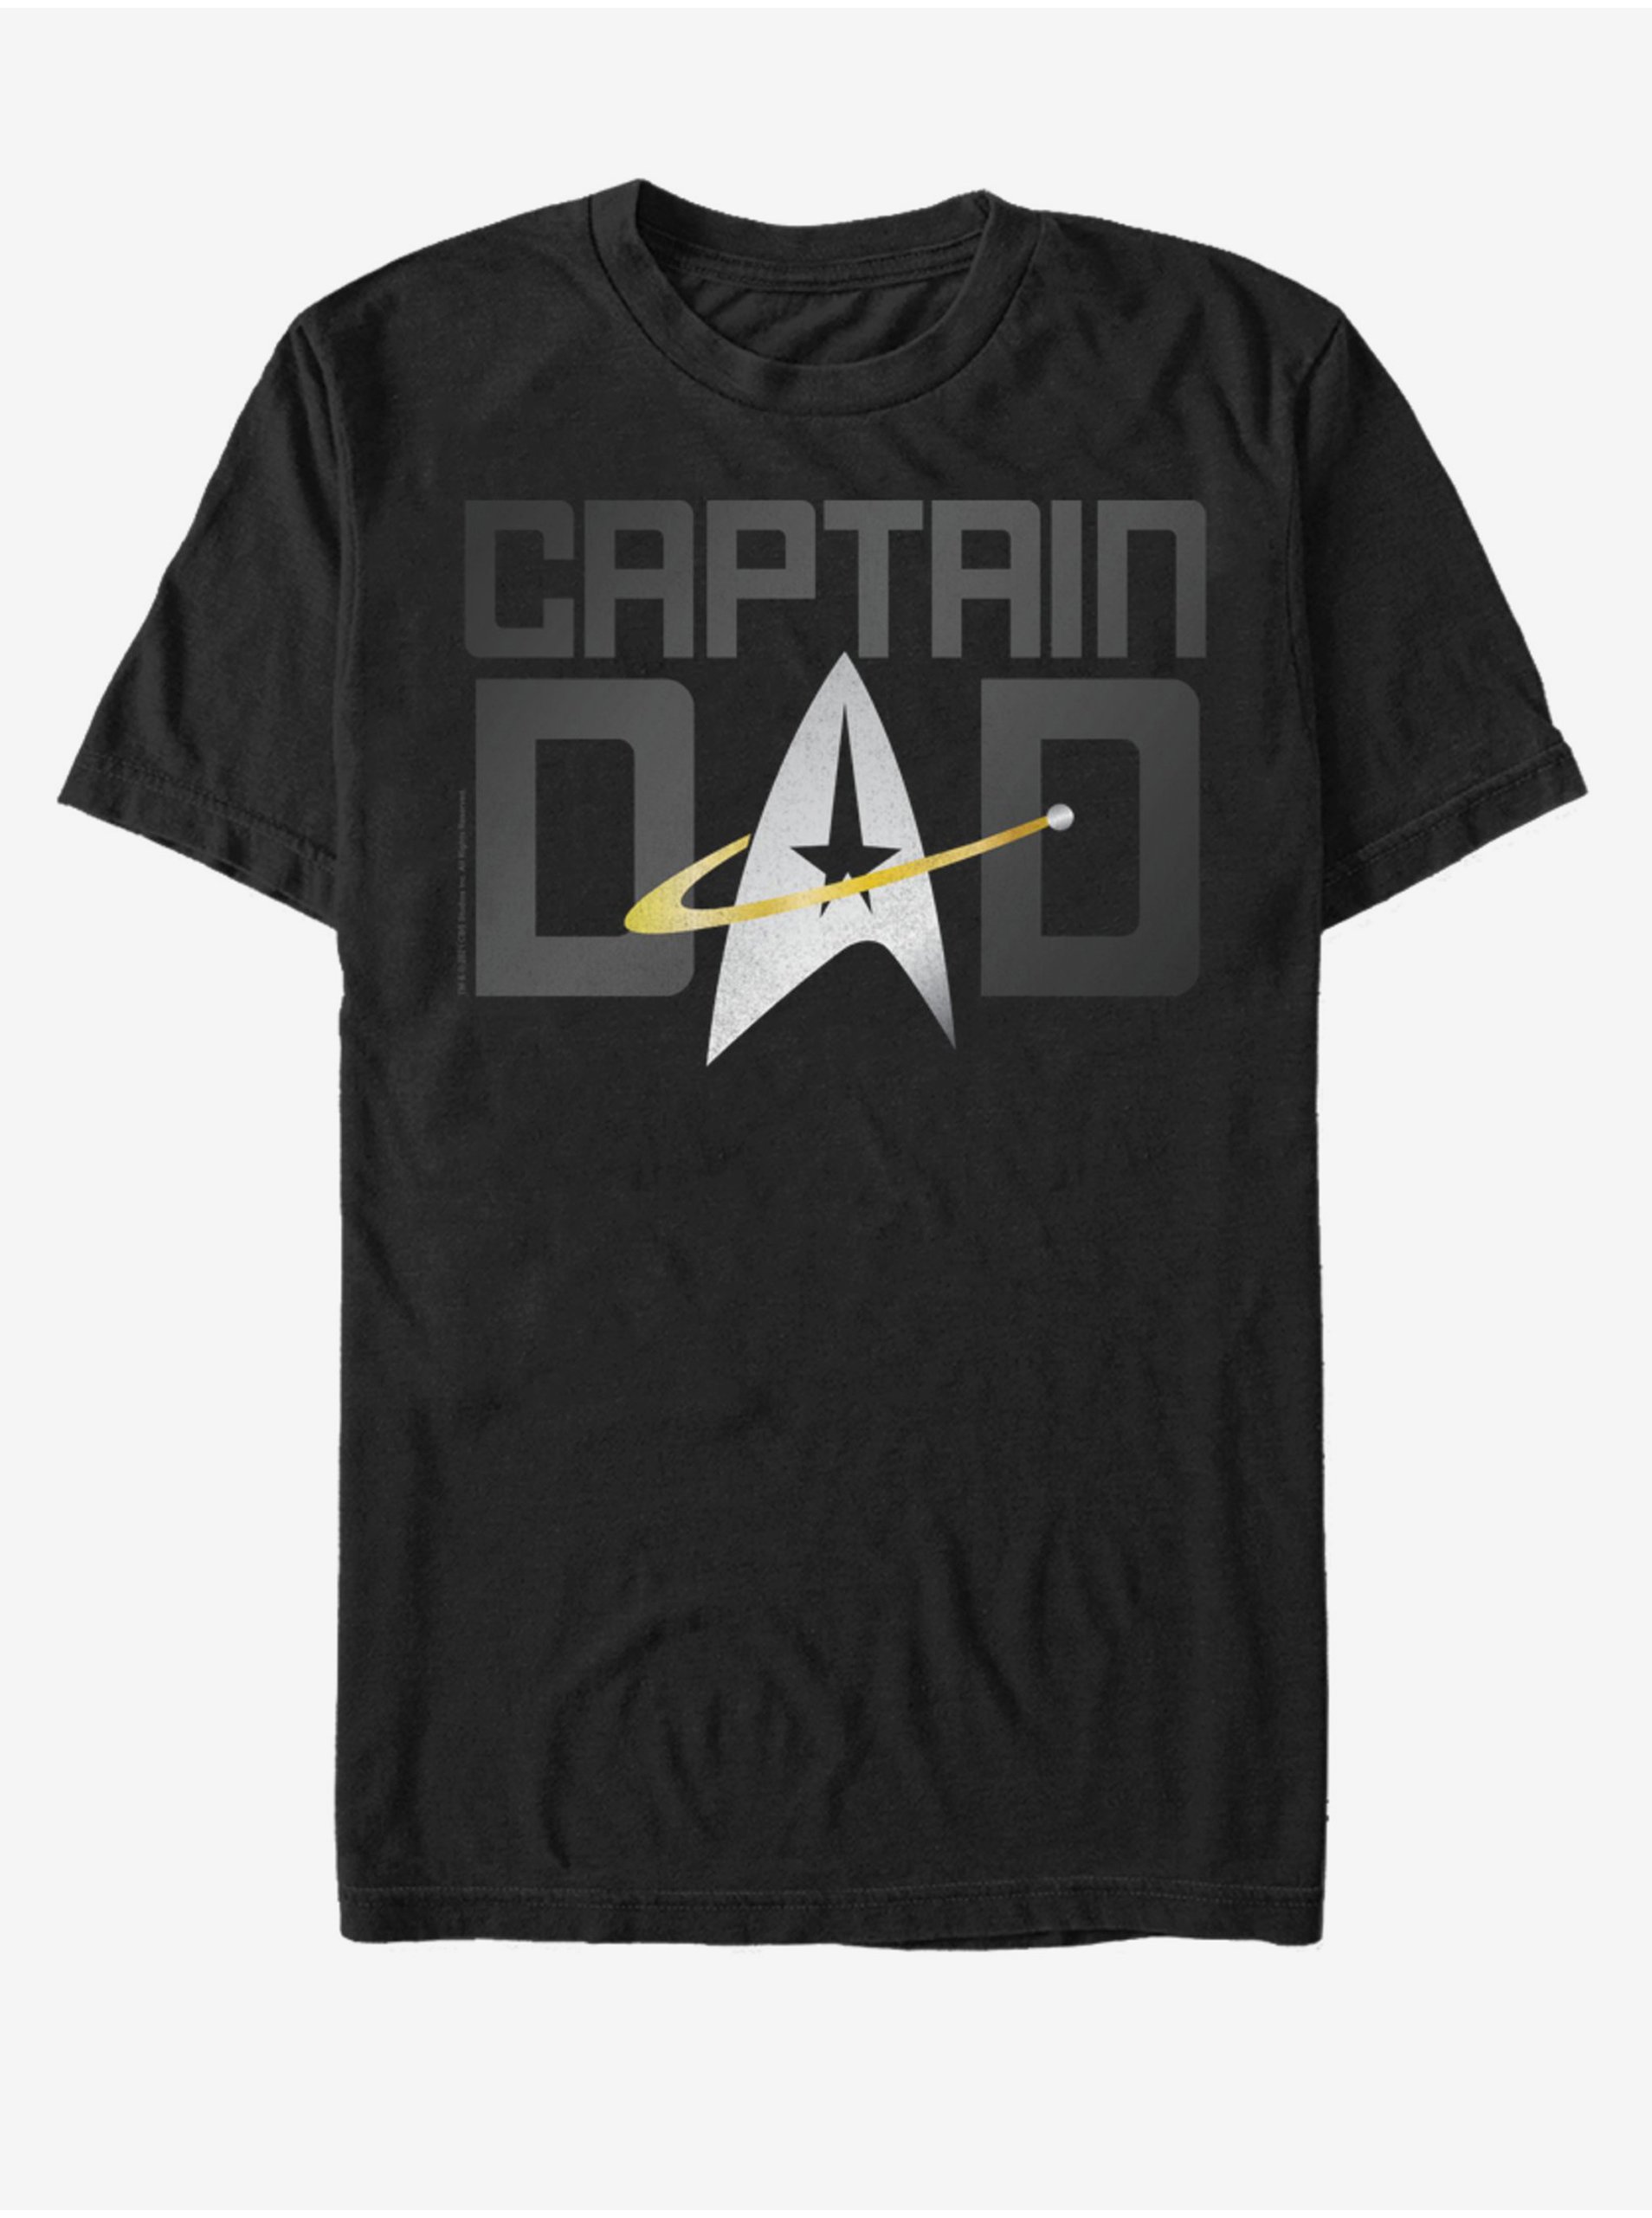 Lacno Černé unisex tričko ZOOT.Fan Paramount Captain Dad